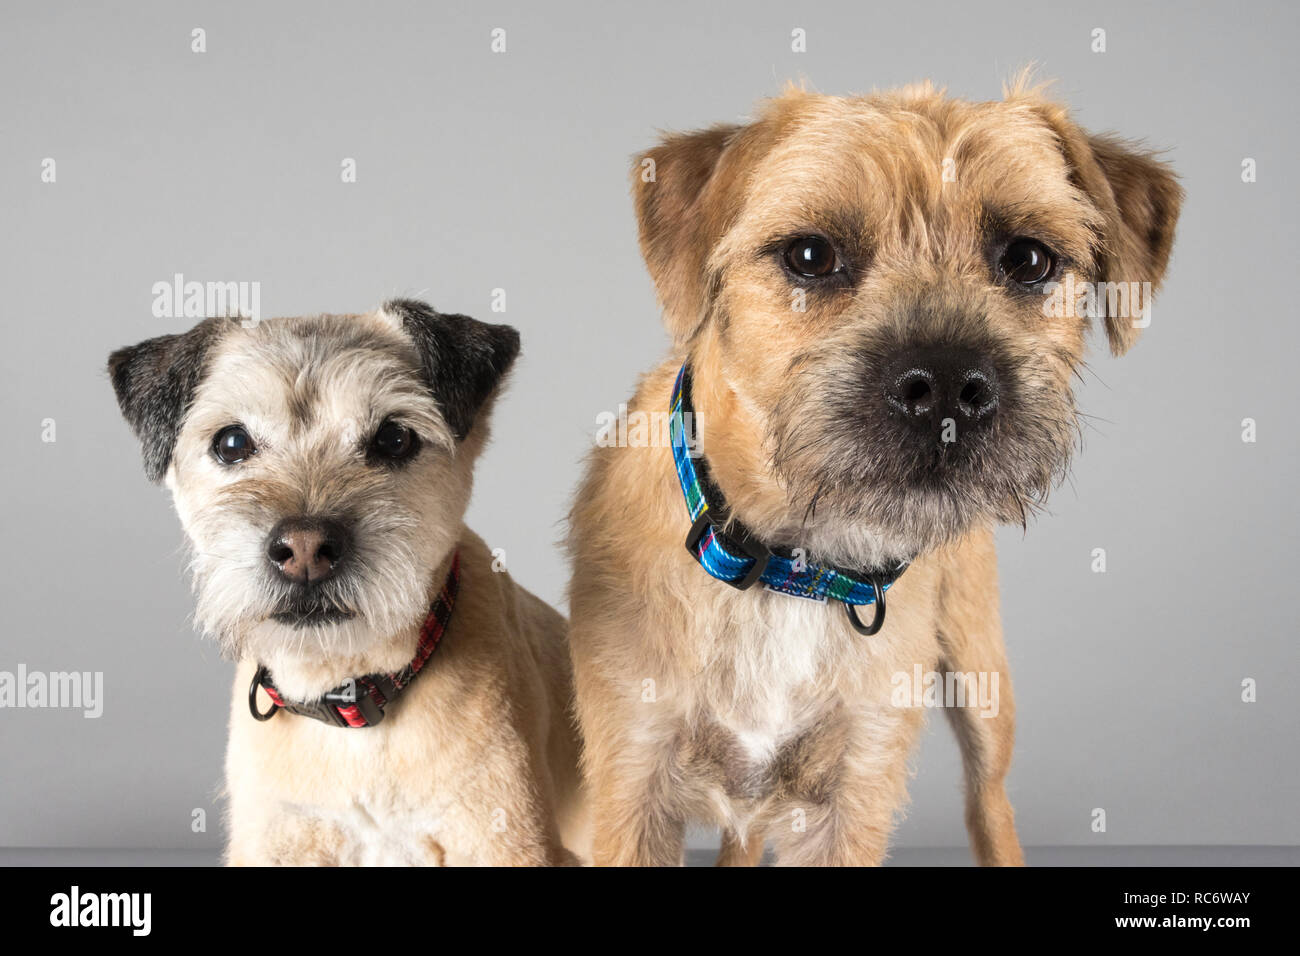 Border Terrier (Erwachsene und Welpe). Britische Doggy-Freunde. Doppelte Probleme! Stockfoto